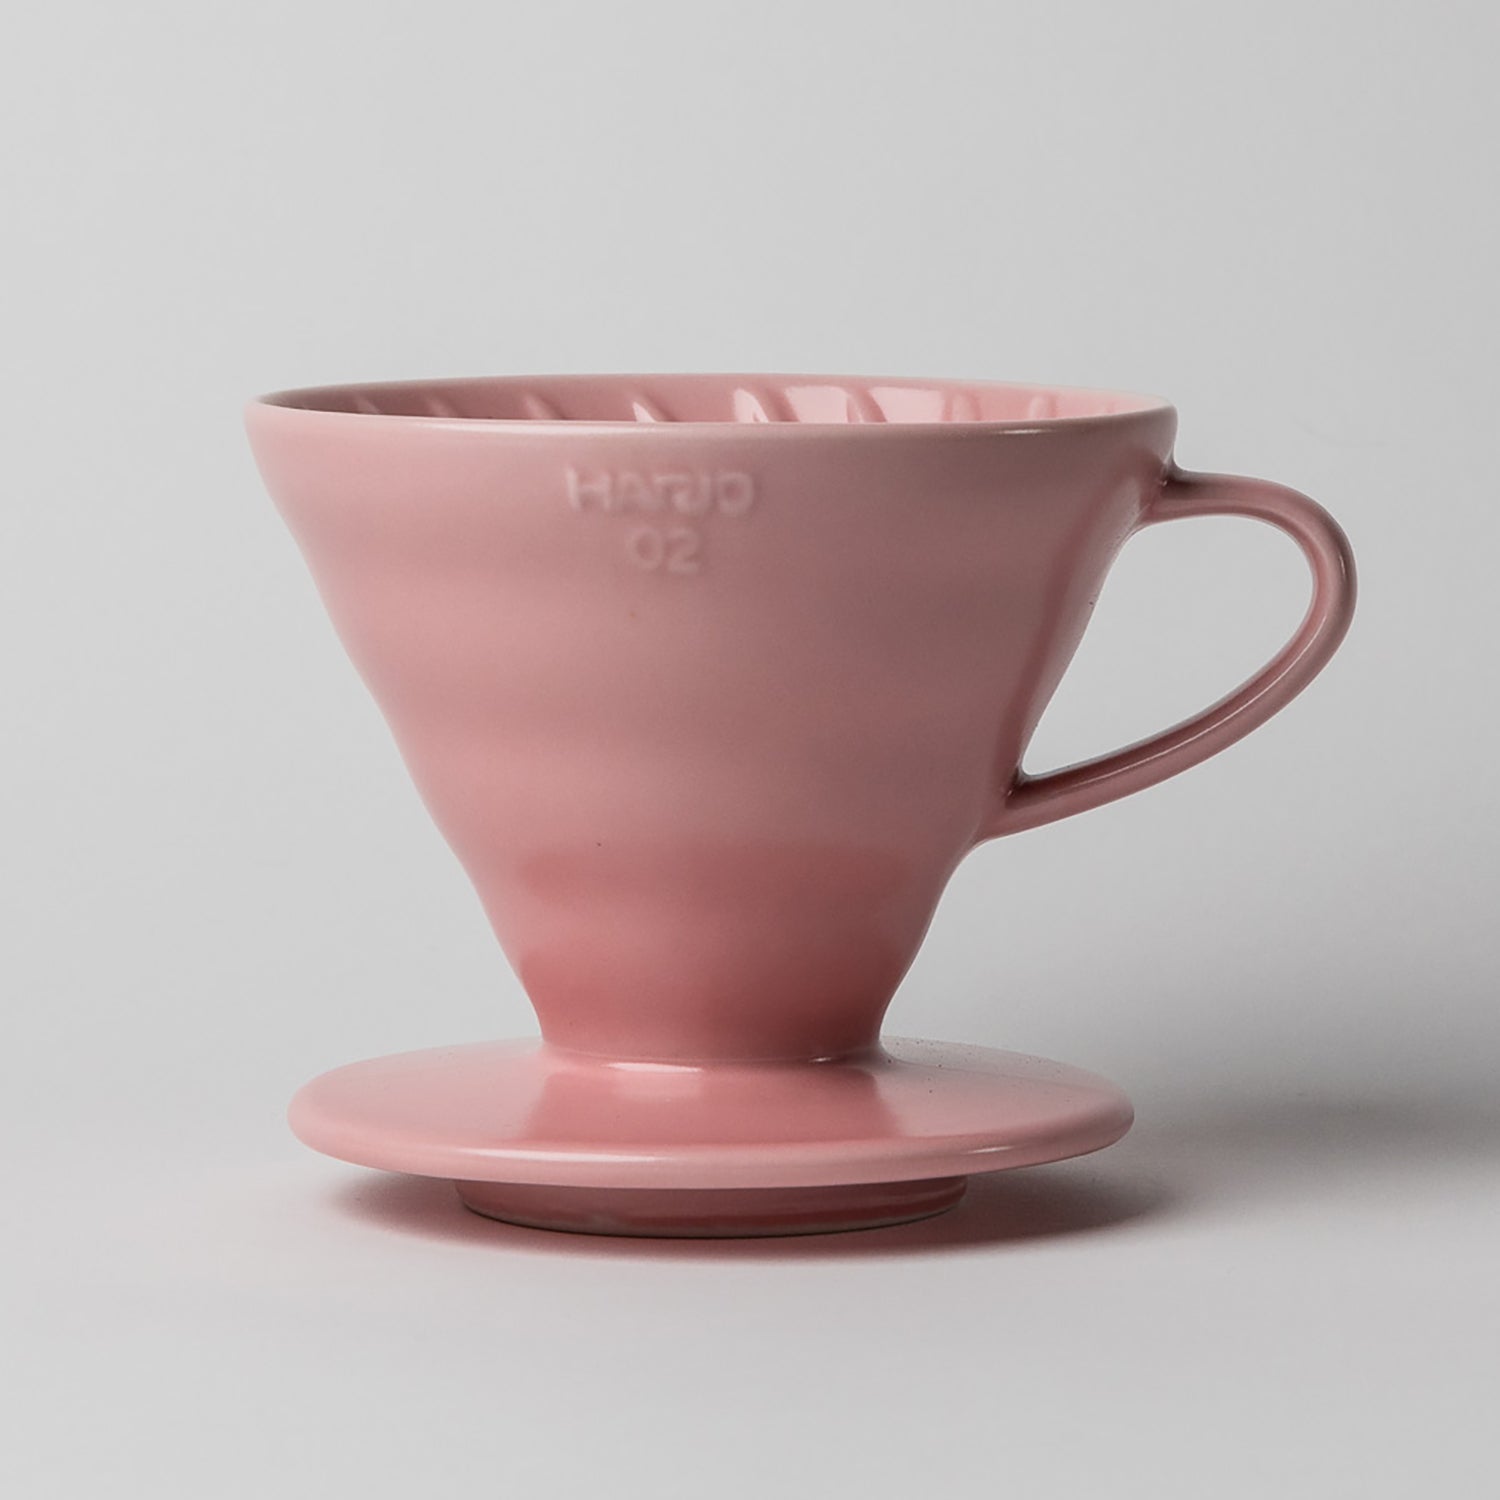 Hario V60 Ceramic Dripper - 02 – Be Bright Coffee